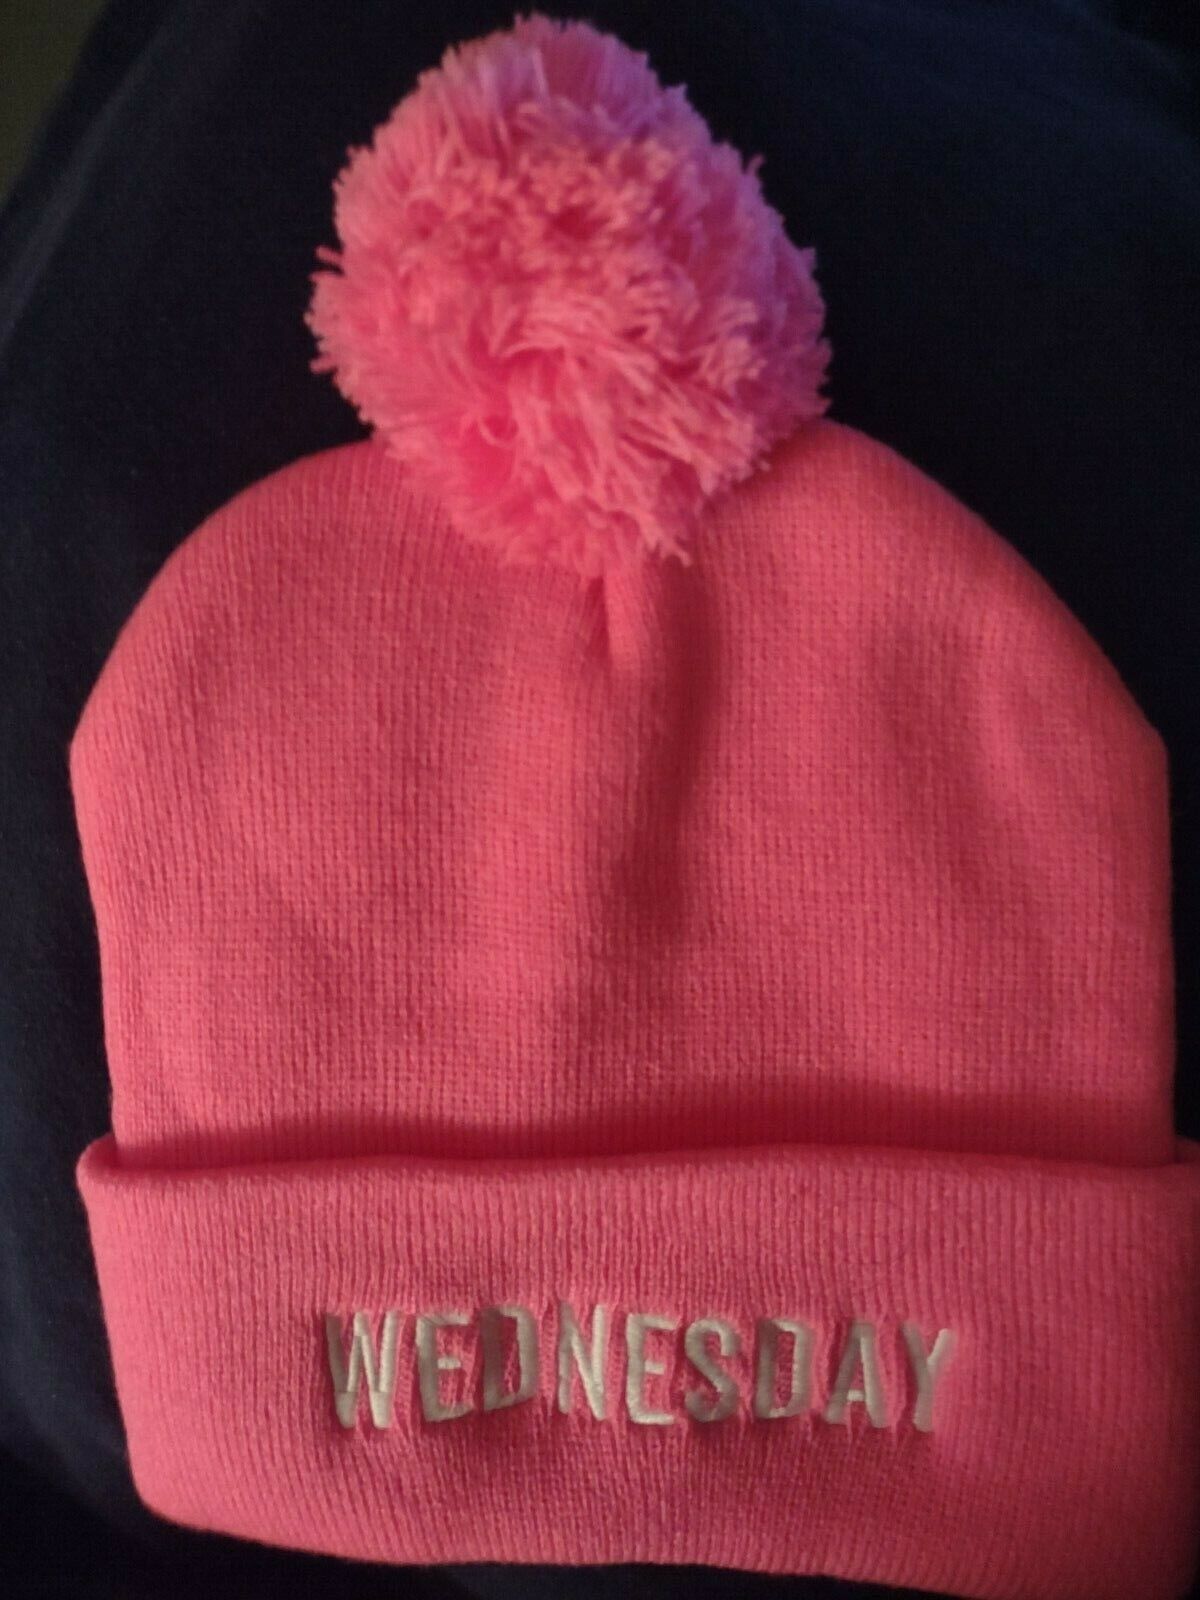 Redesign Broadway Pink-pom Beanie, Mean Girls Hat "wednesday"